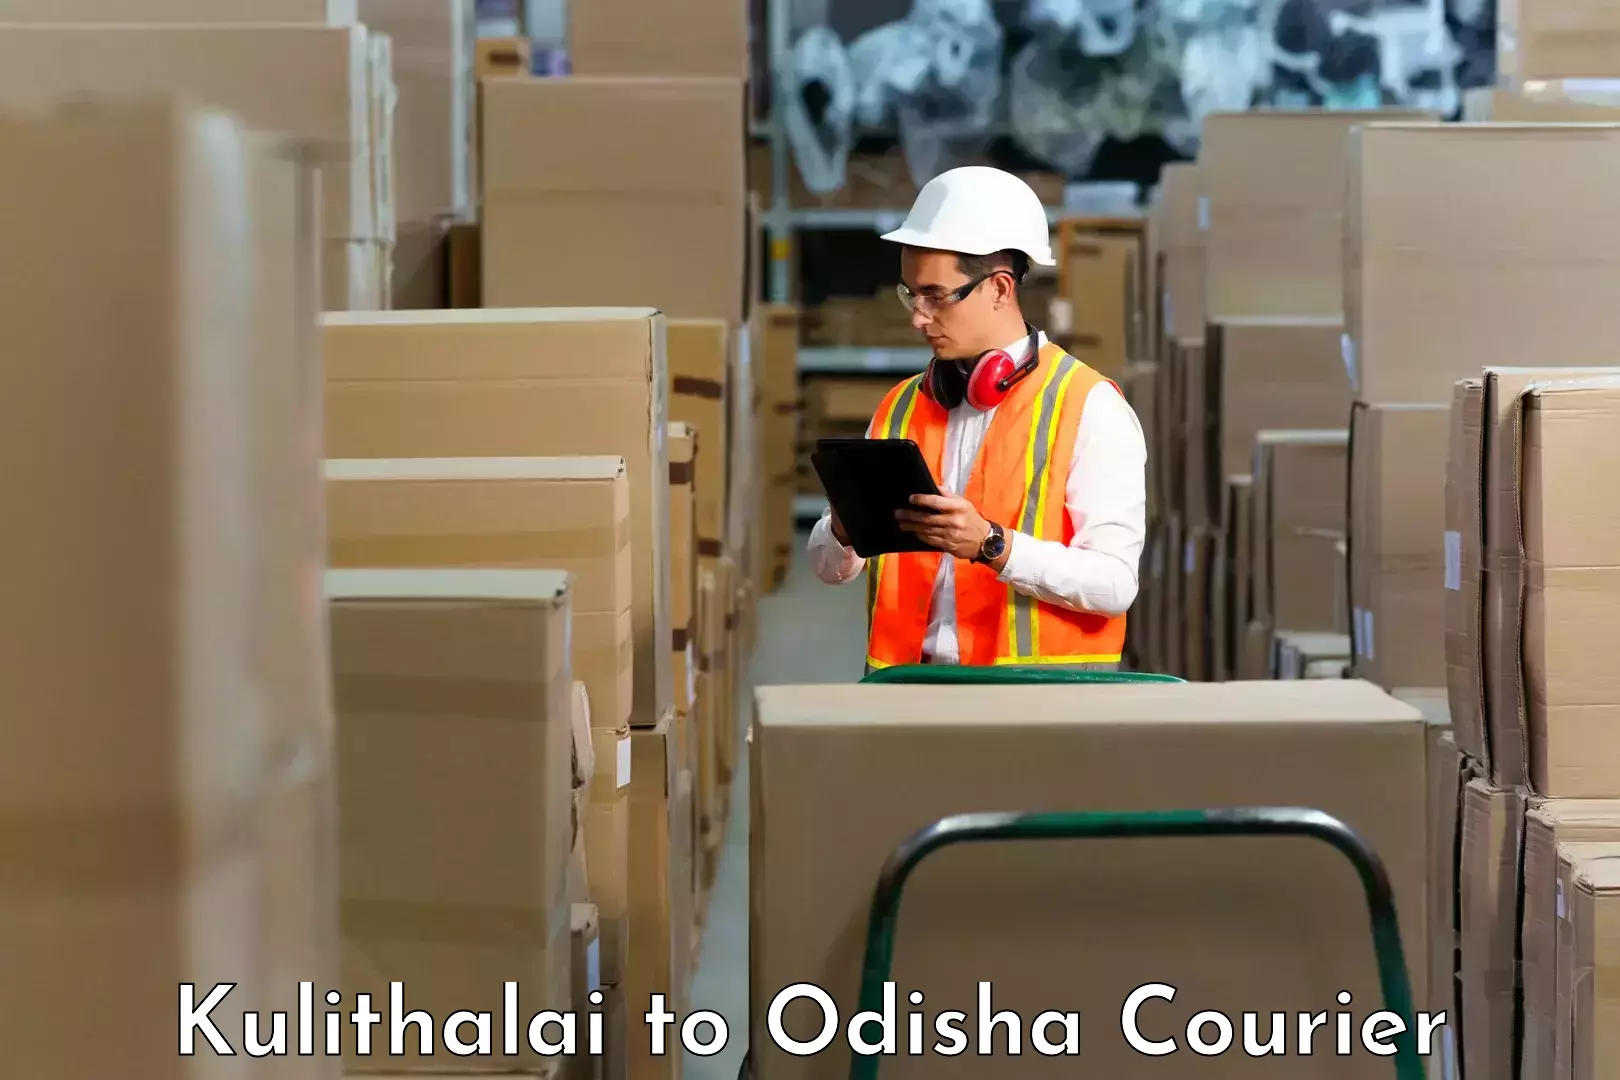 Professional courier handling Kulithalai to Bhuban